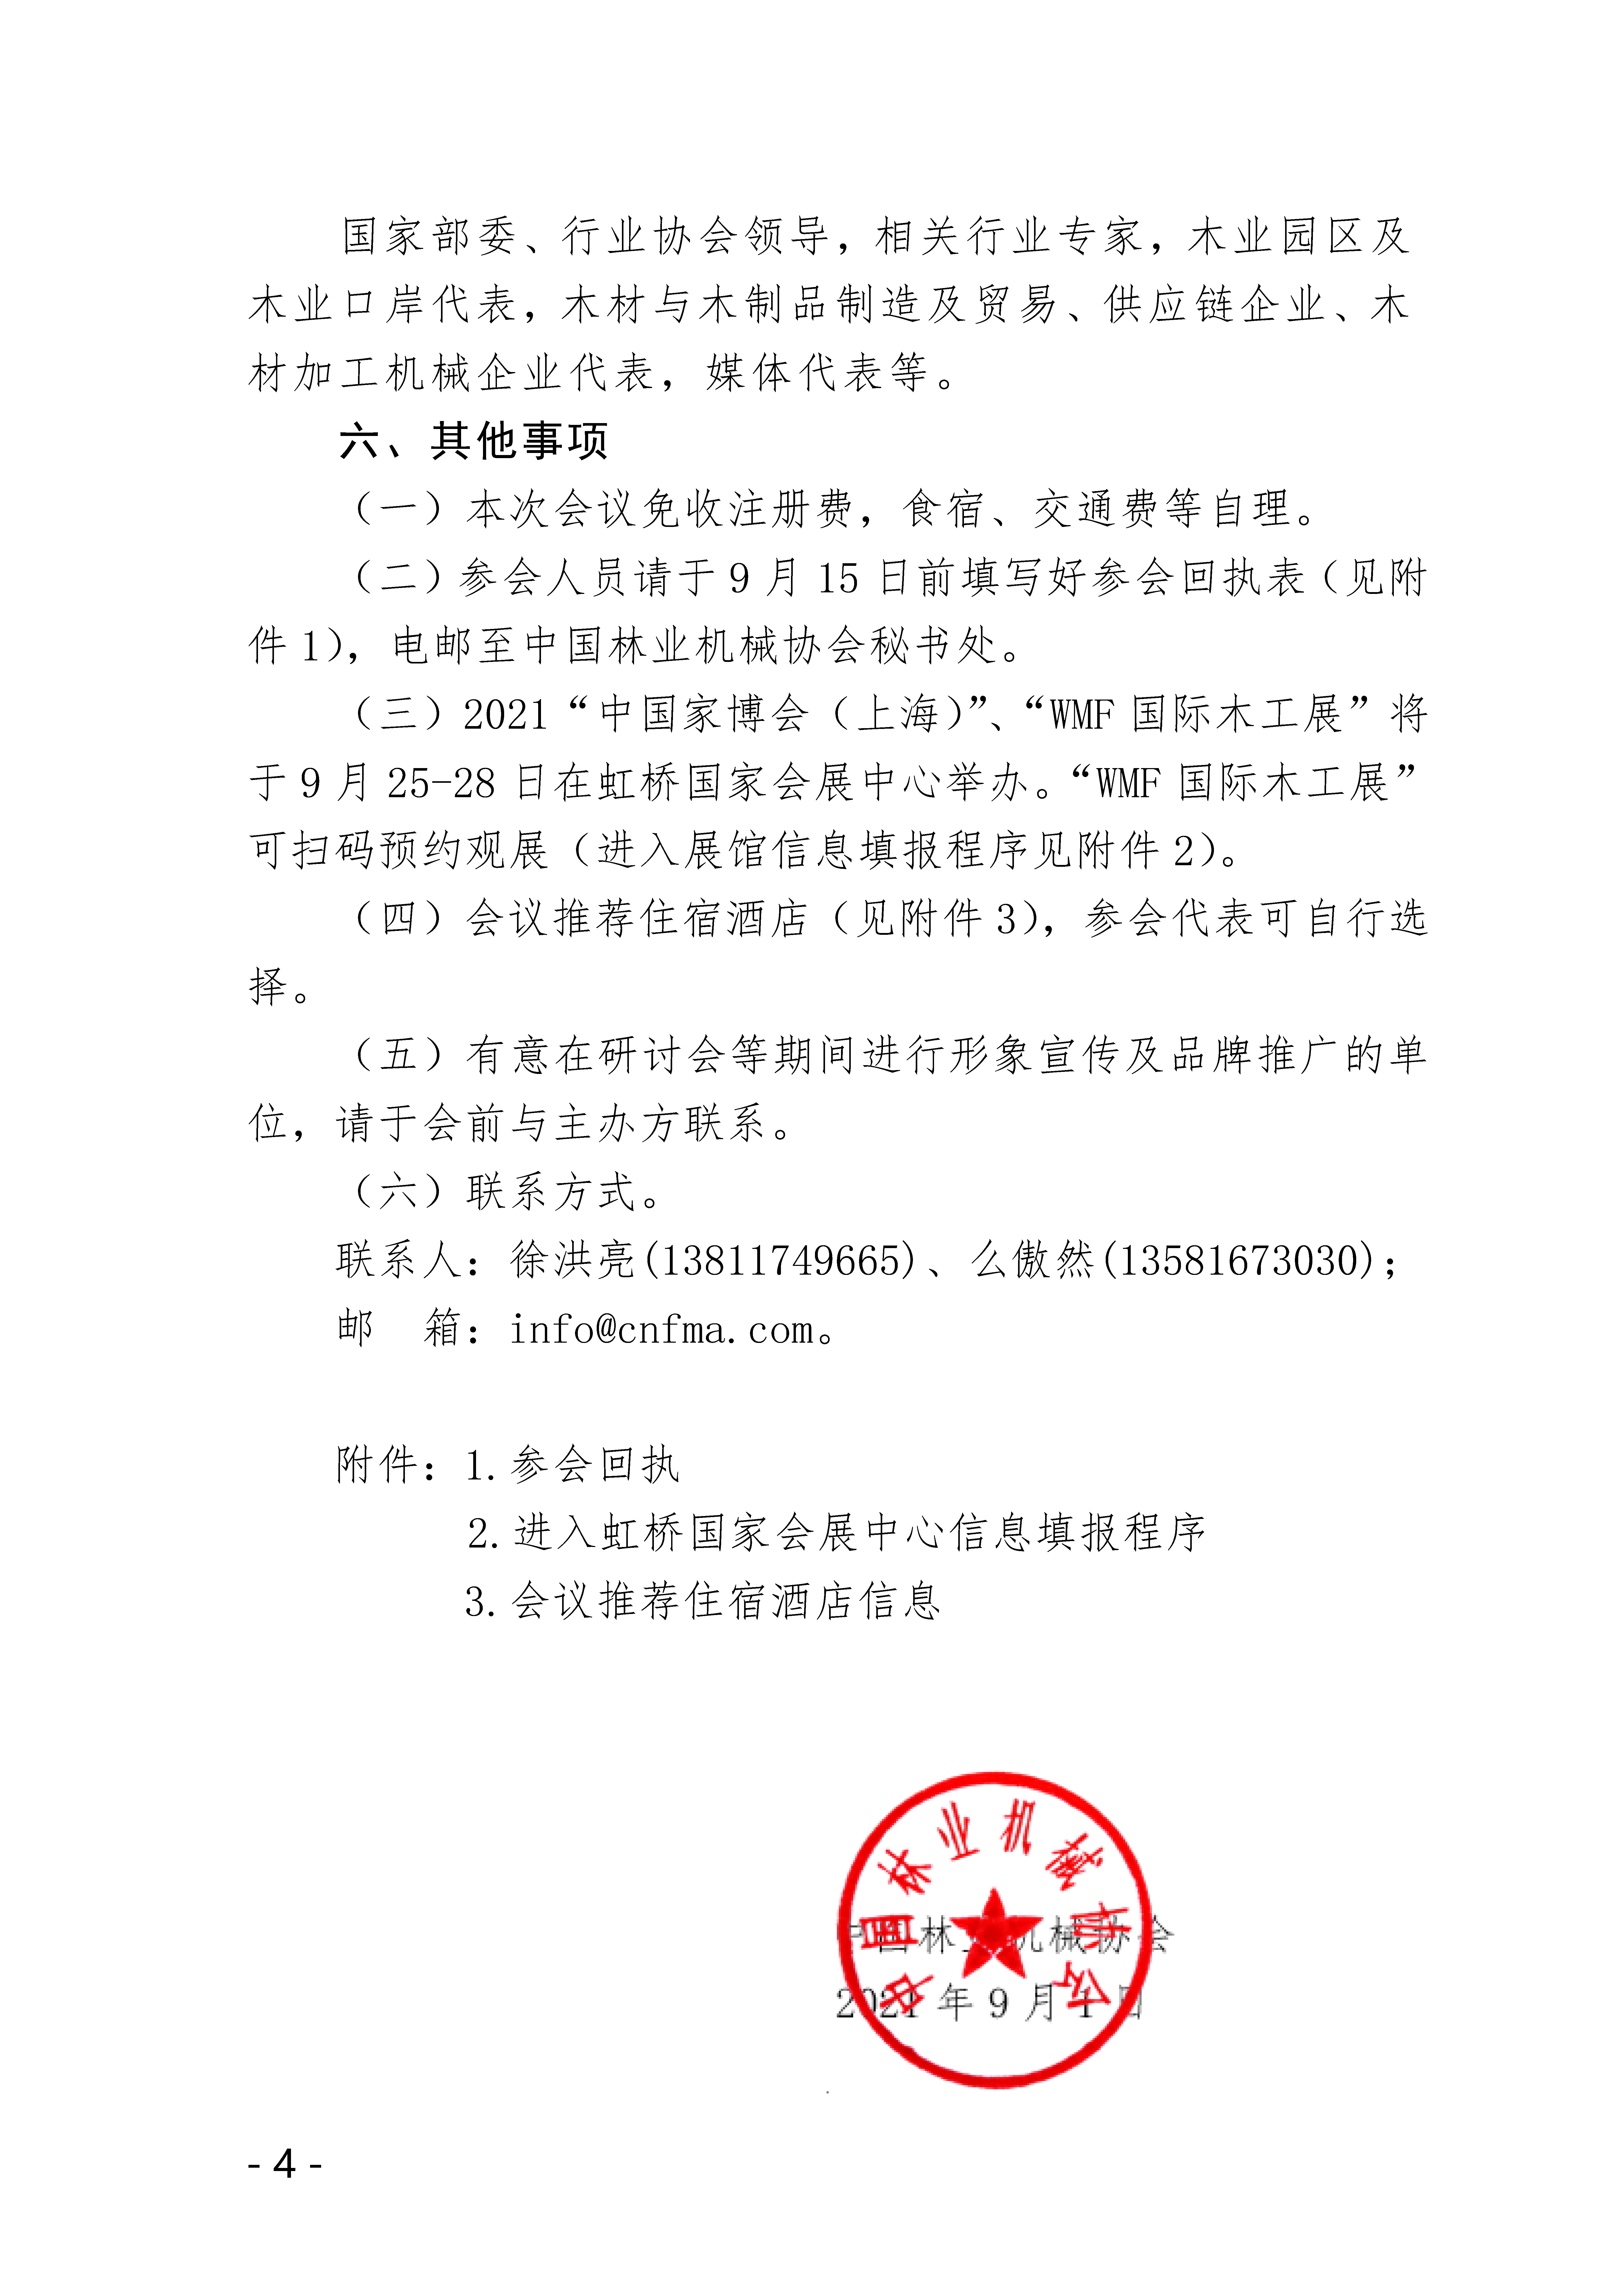 關于召開第三屆中國木業園區及口岸發展大會(1)_頁面_4